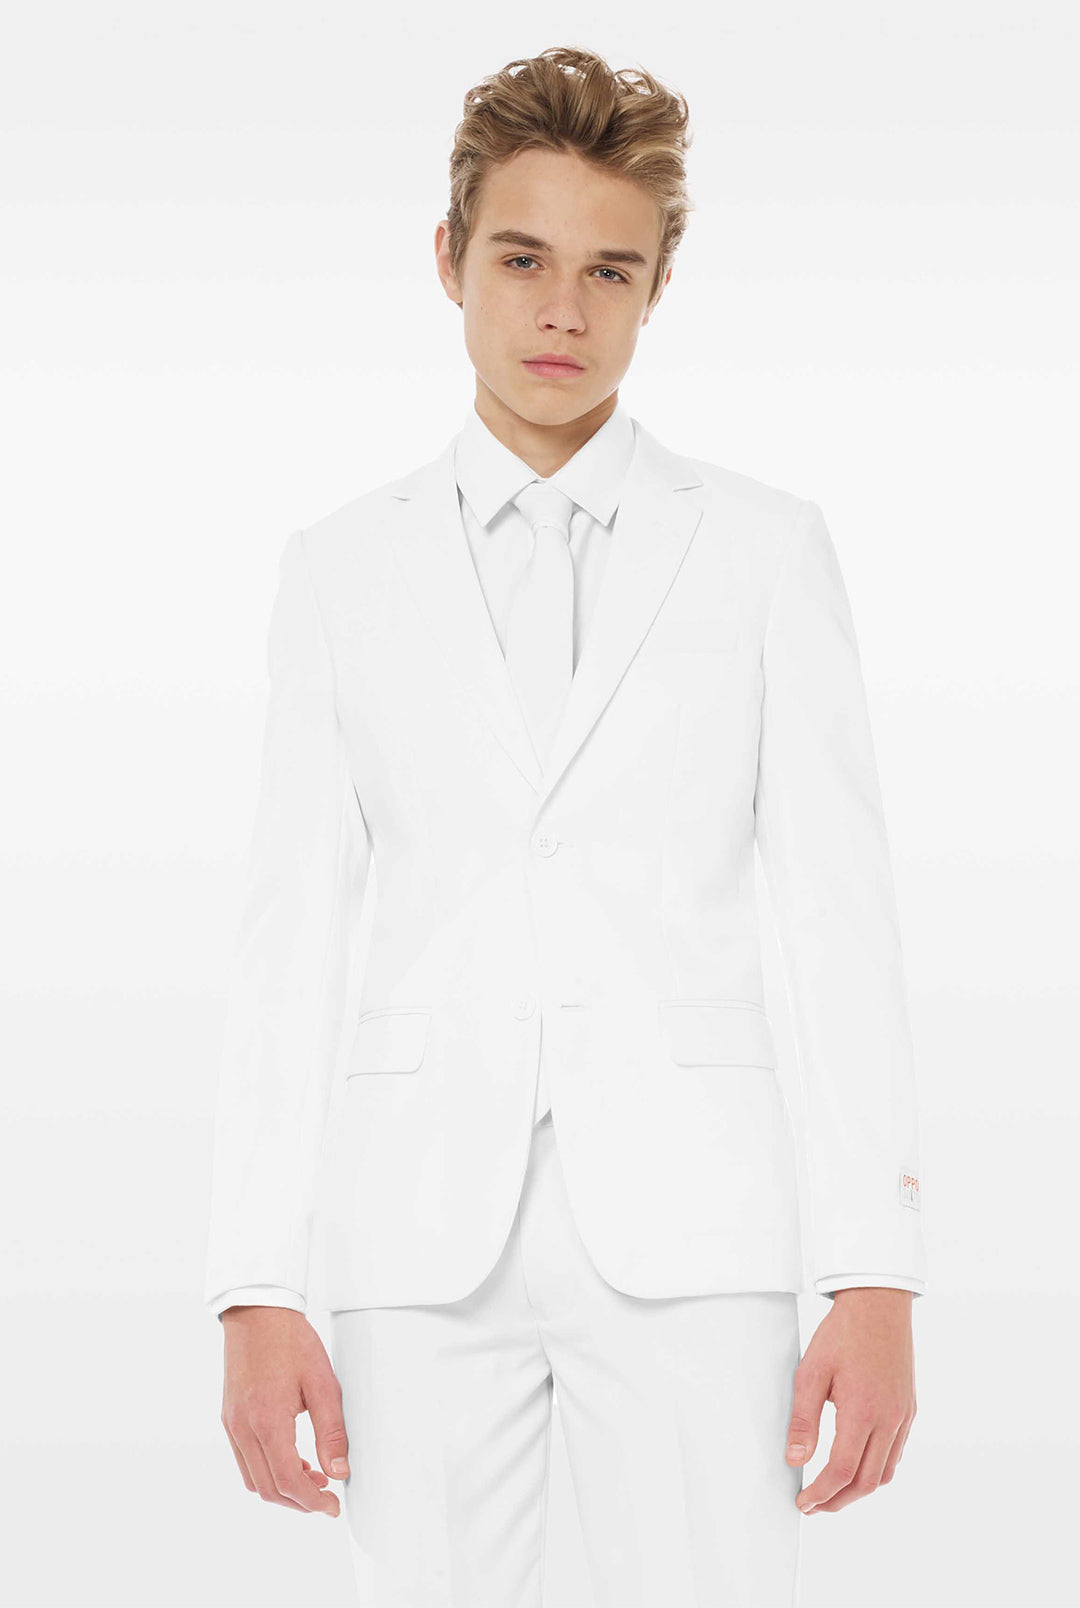 white dress suit